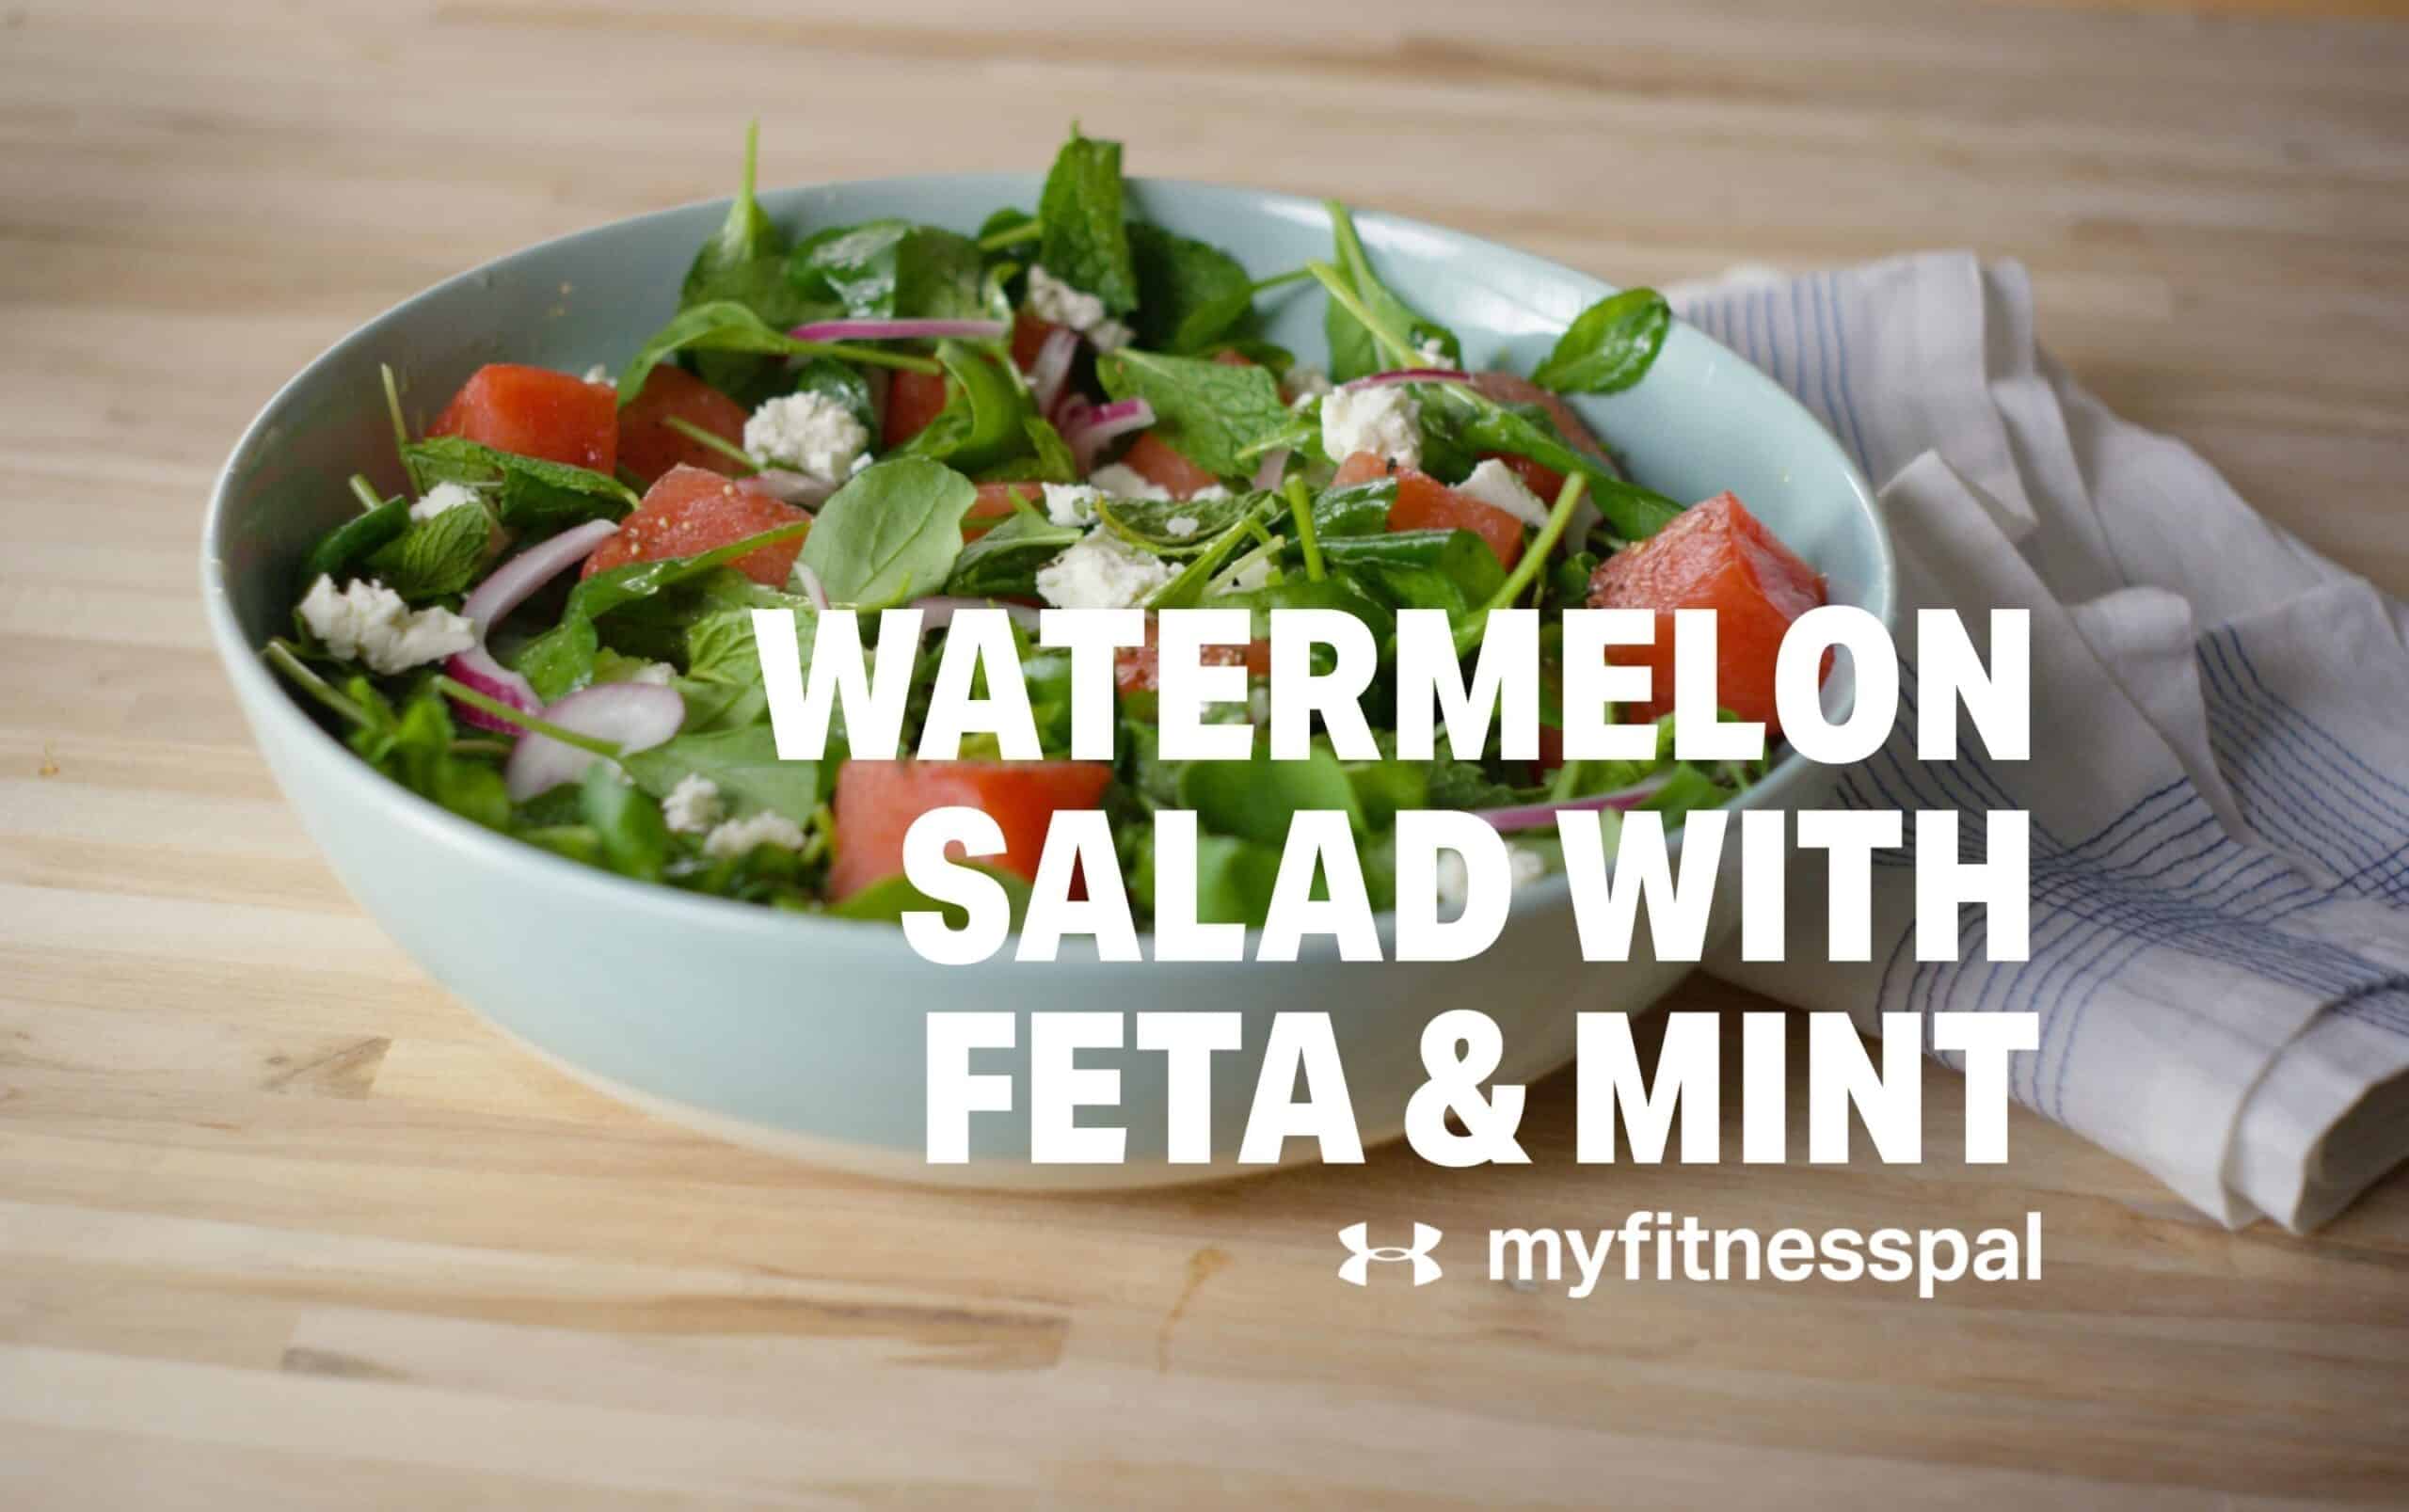 Watermelon Salad with Feta & Mint